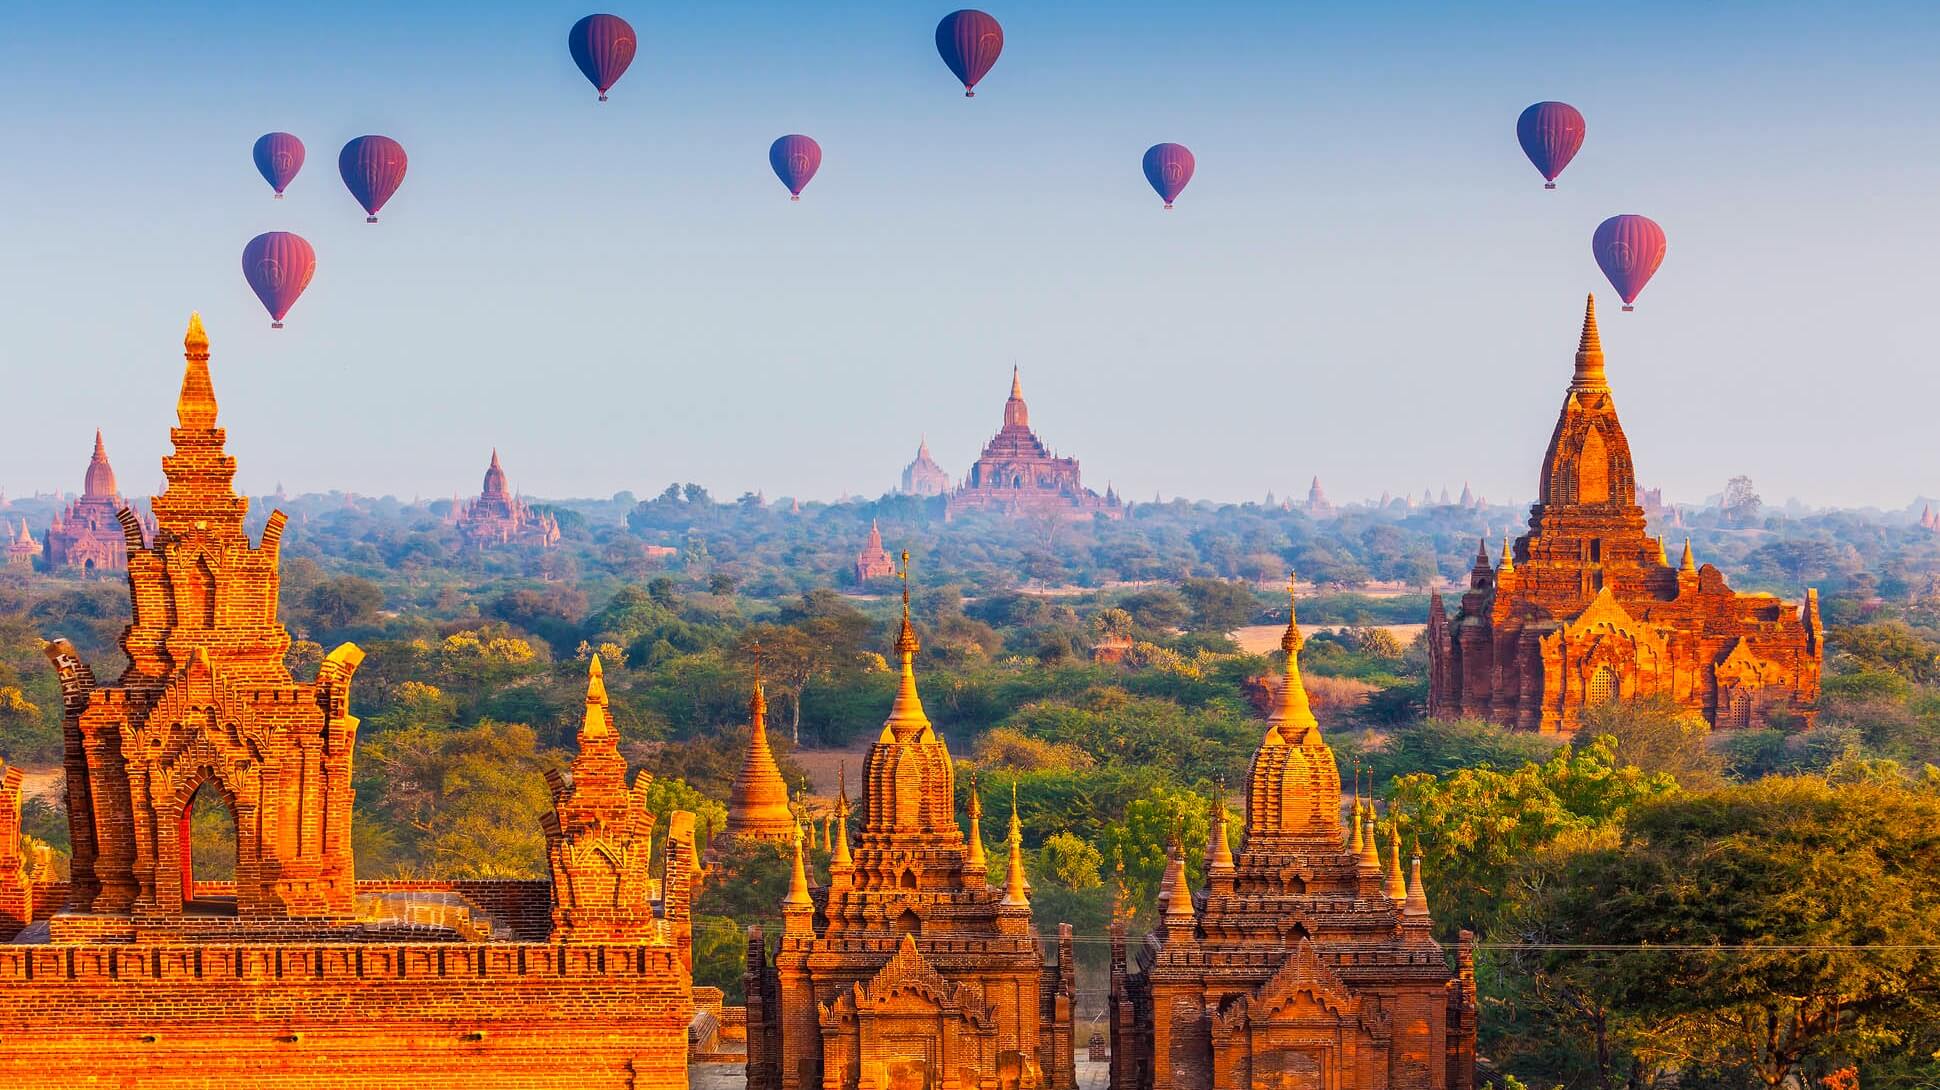 Top 100 Di Sản Thế Giới của UNESCO – P.18 – Bagan (Myanmar): Công trình đền chùa độc đáo nơi thành phố cổ Bagan - HỘI KỶ LỤC GIA VIỆT NAM -